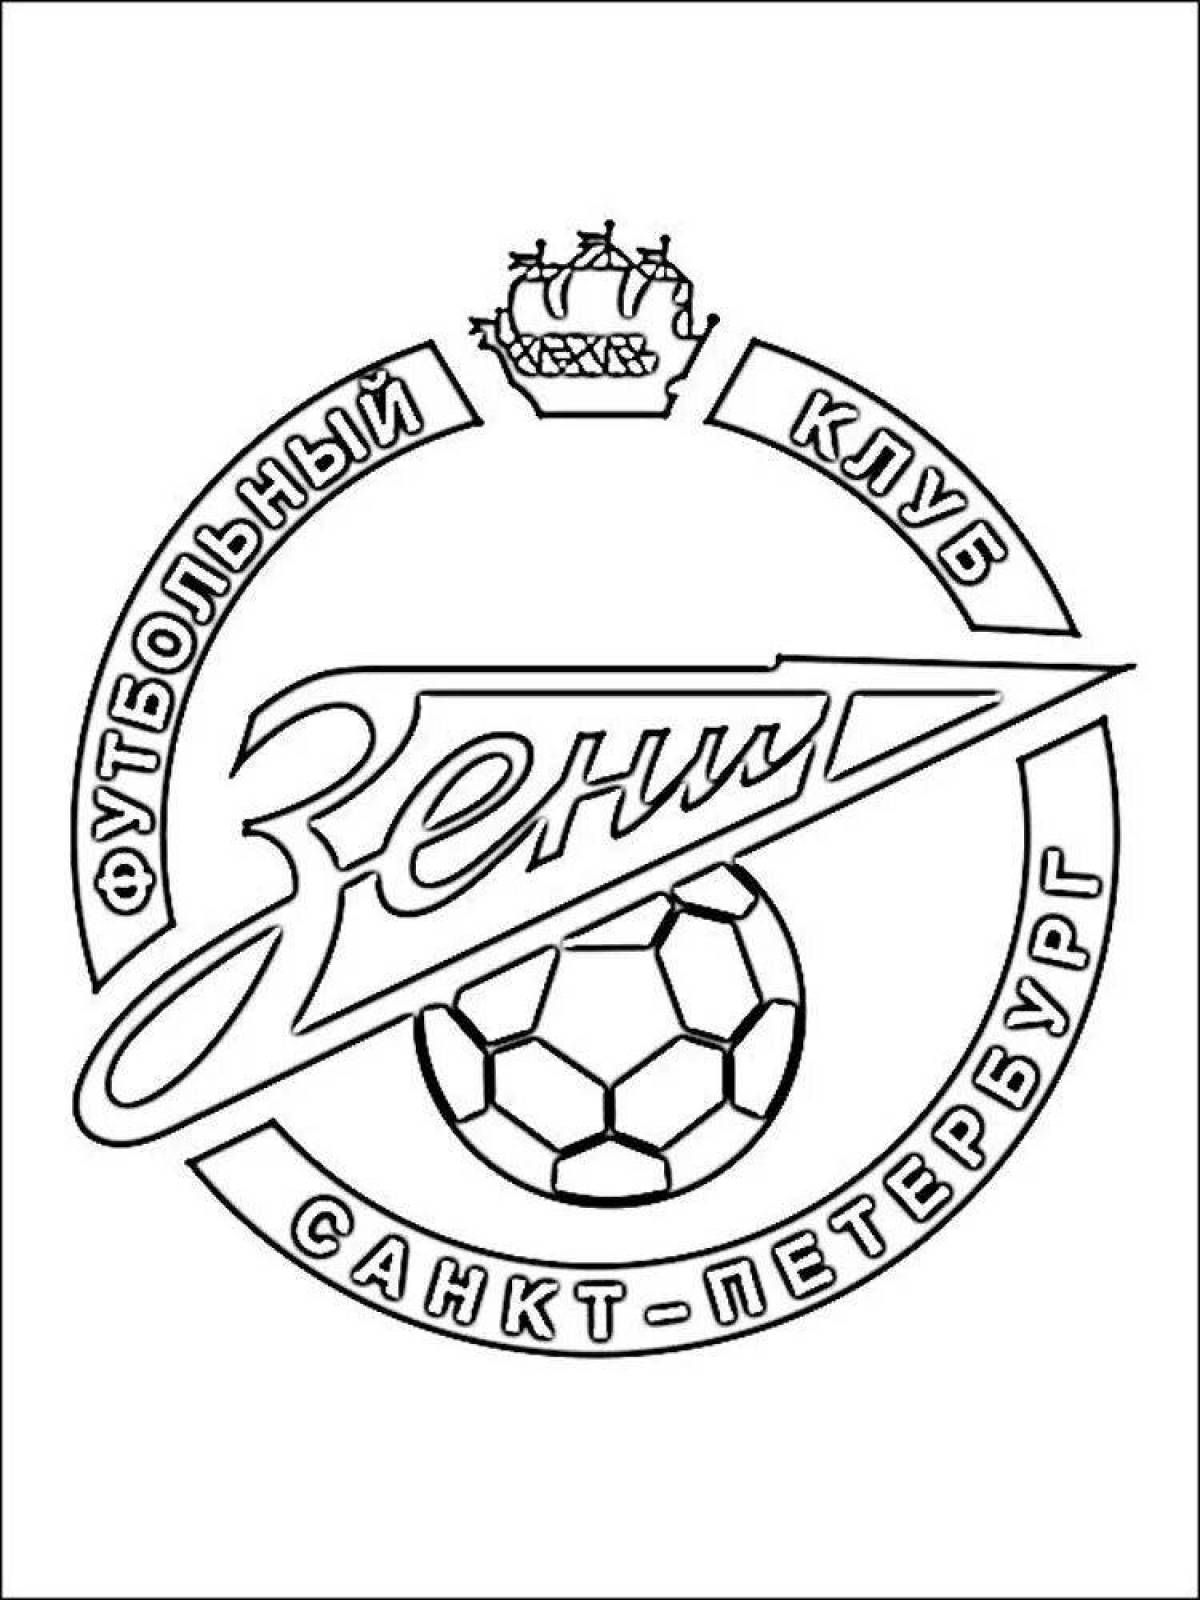 Зенит эмблема клуба футбольного клуба